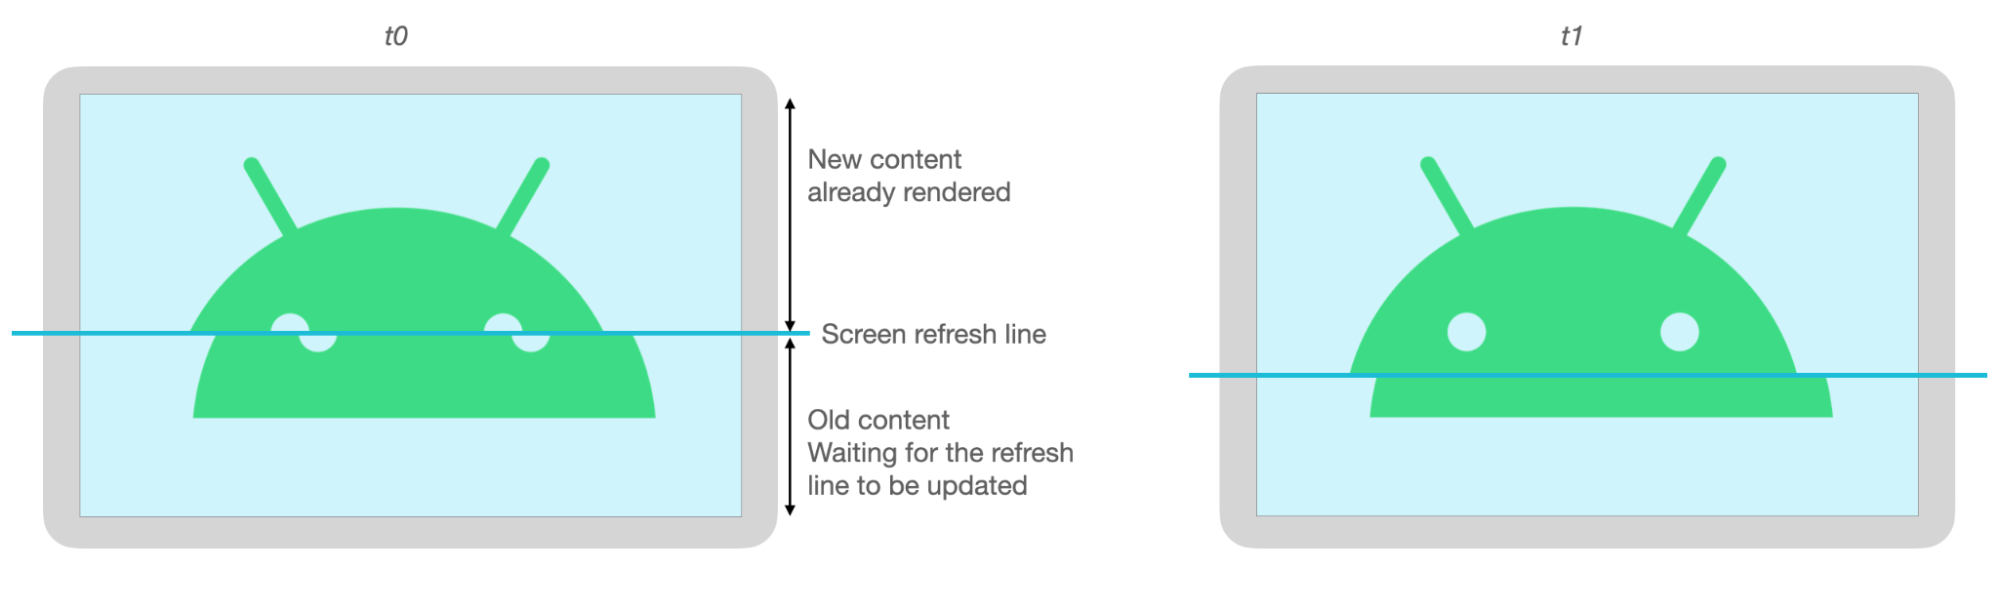 Ekran yenilenirken yırtılma nedeniyle Android görüntüsünün üst ve alt kısımları yanlış hizalanıyor.